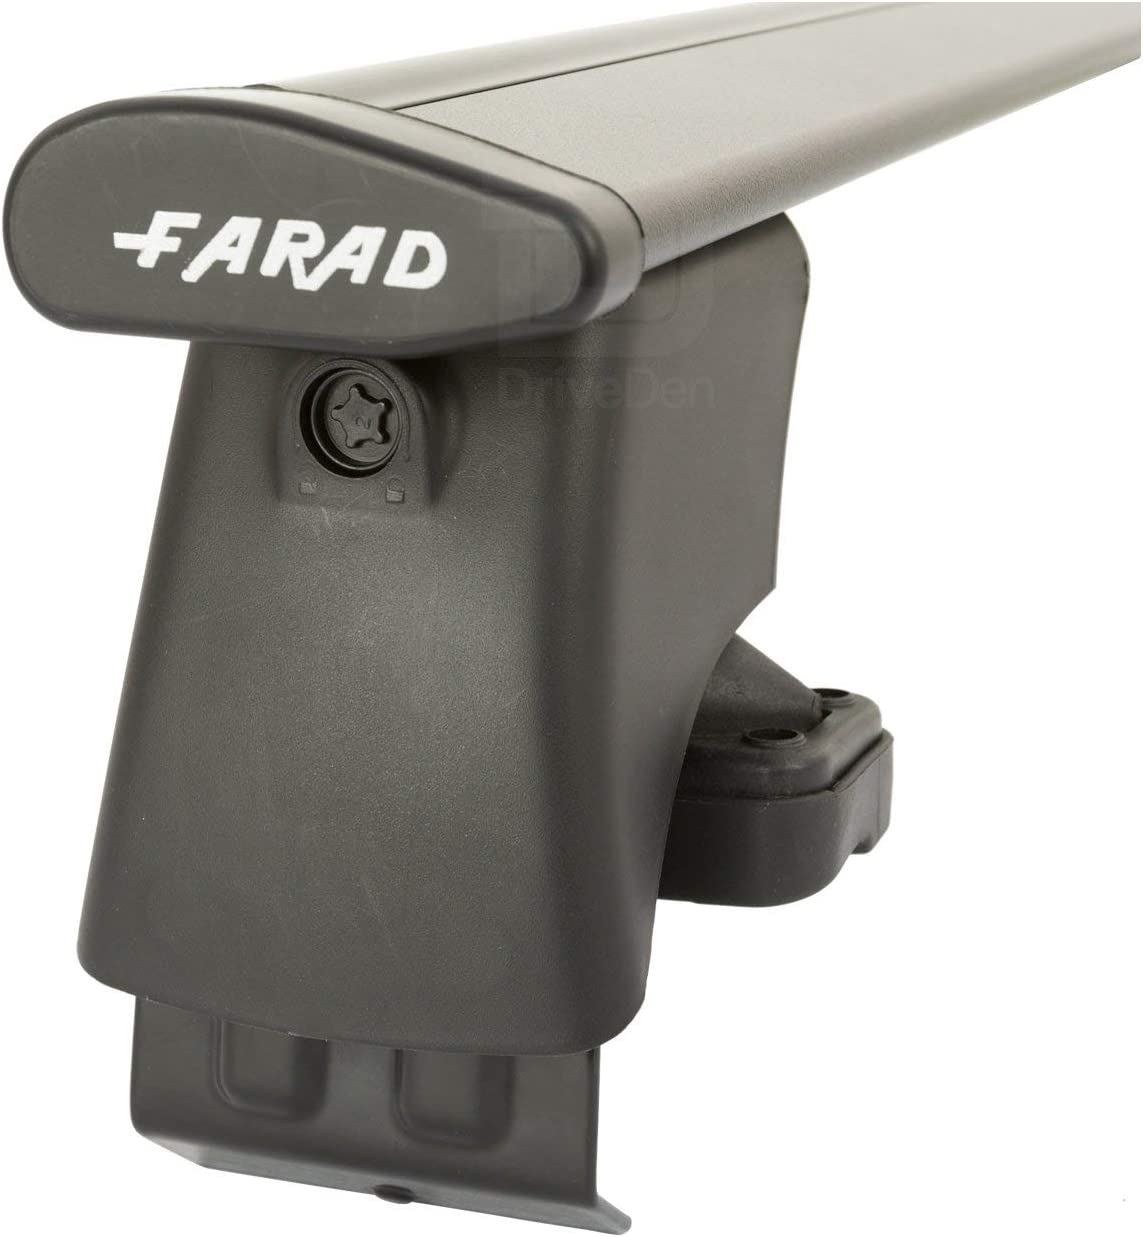 FARAD-Kit H2 per barre portatutto - Peugeot 208 2012-2019 (senza corrimano)